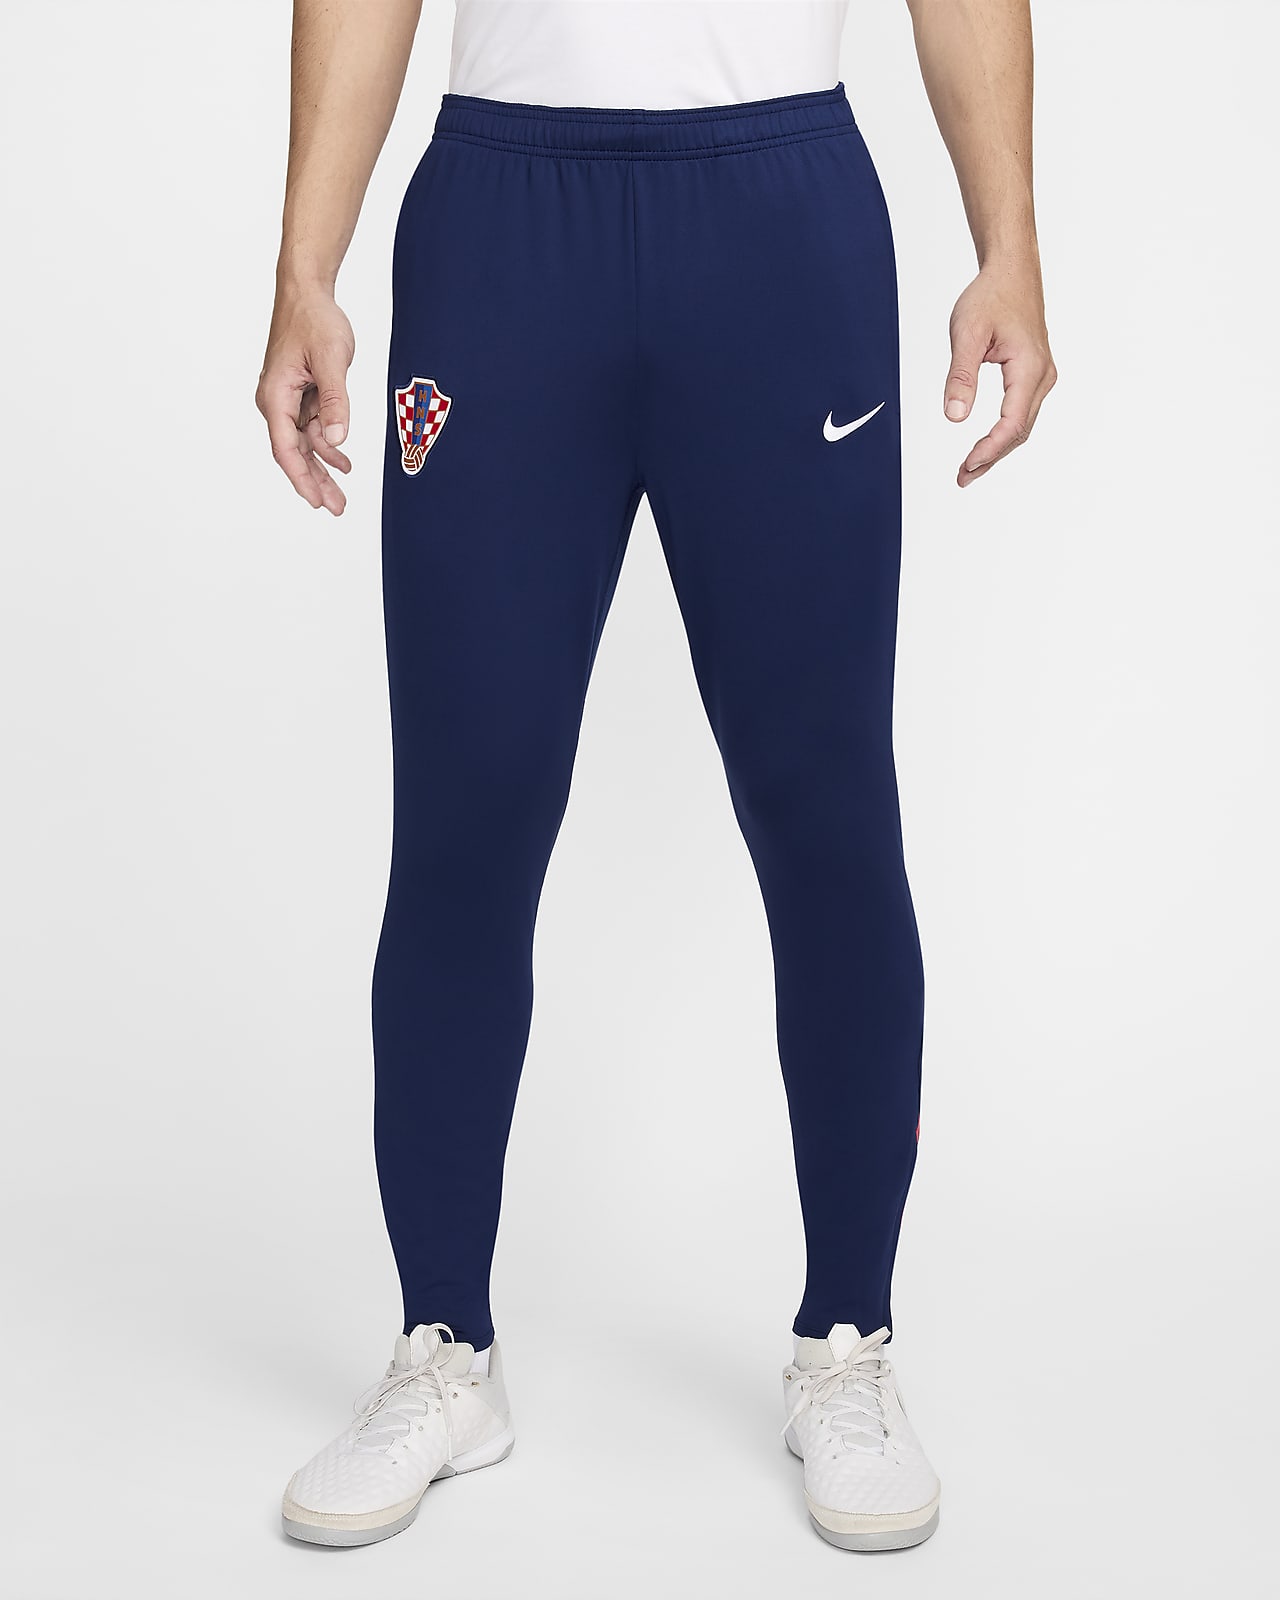 Pantaloni da calcio Nike Dri-FIT Croazia Strike – Uomo